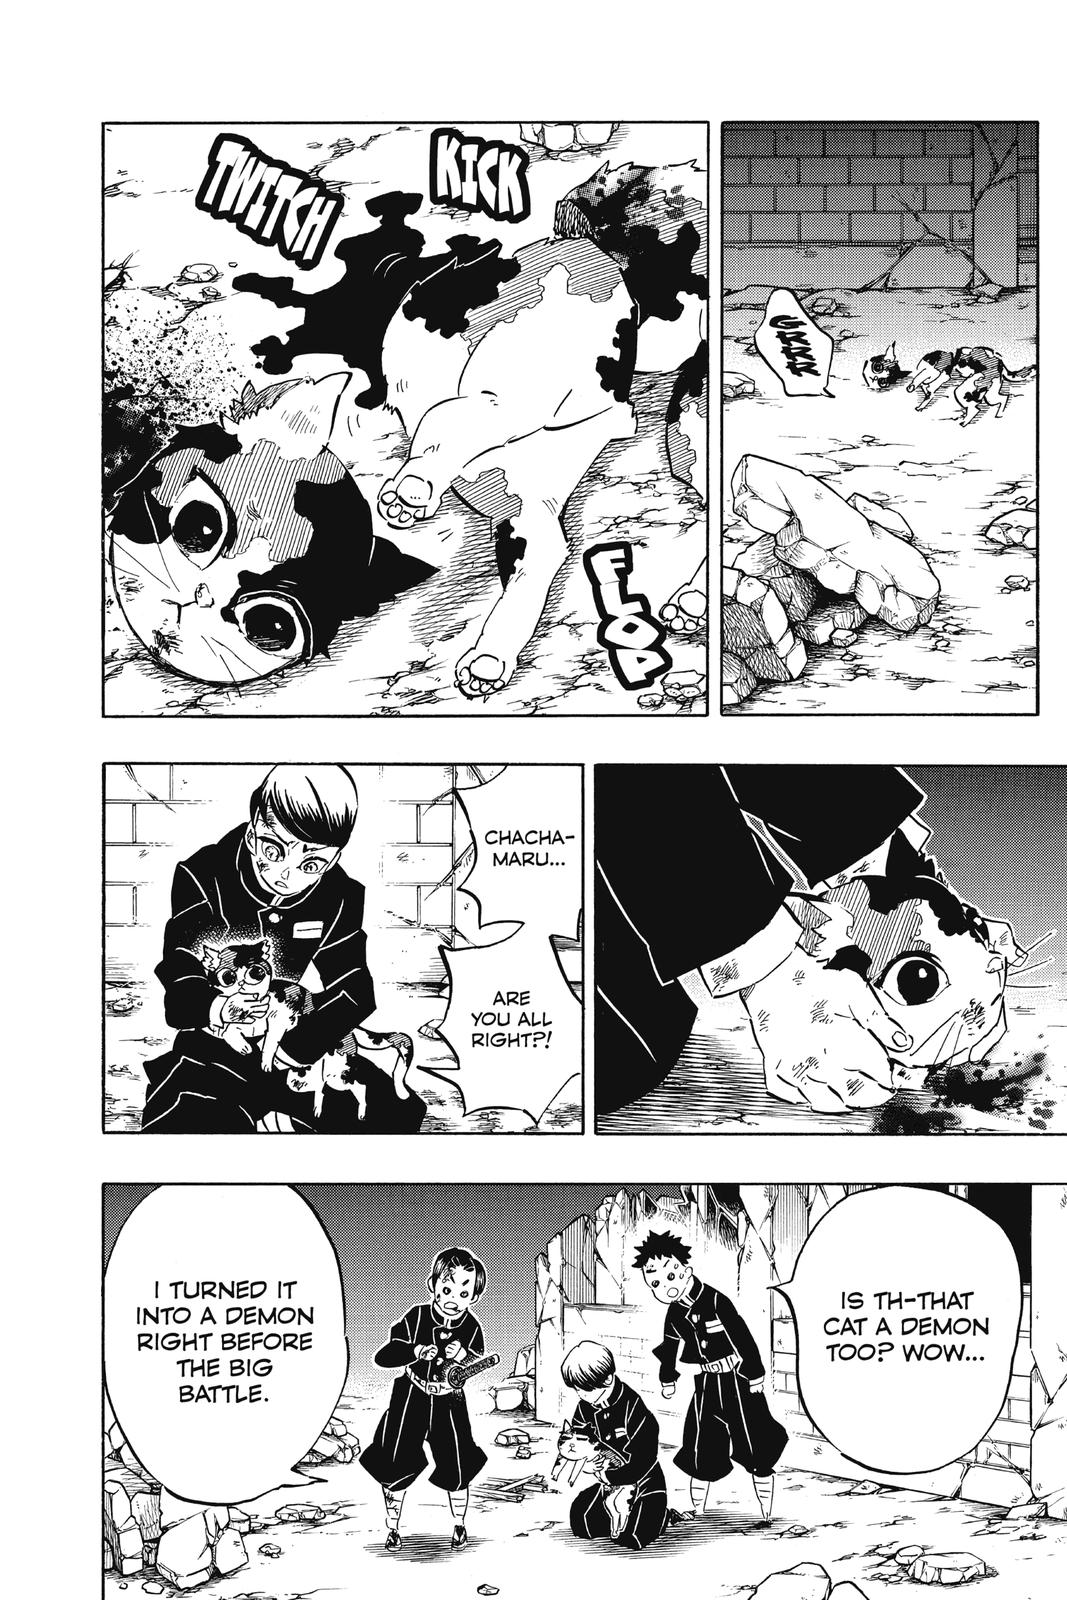 Demon Slayer Manga Manga Chapter - 194 - image 2